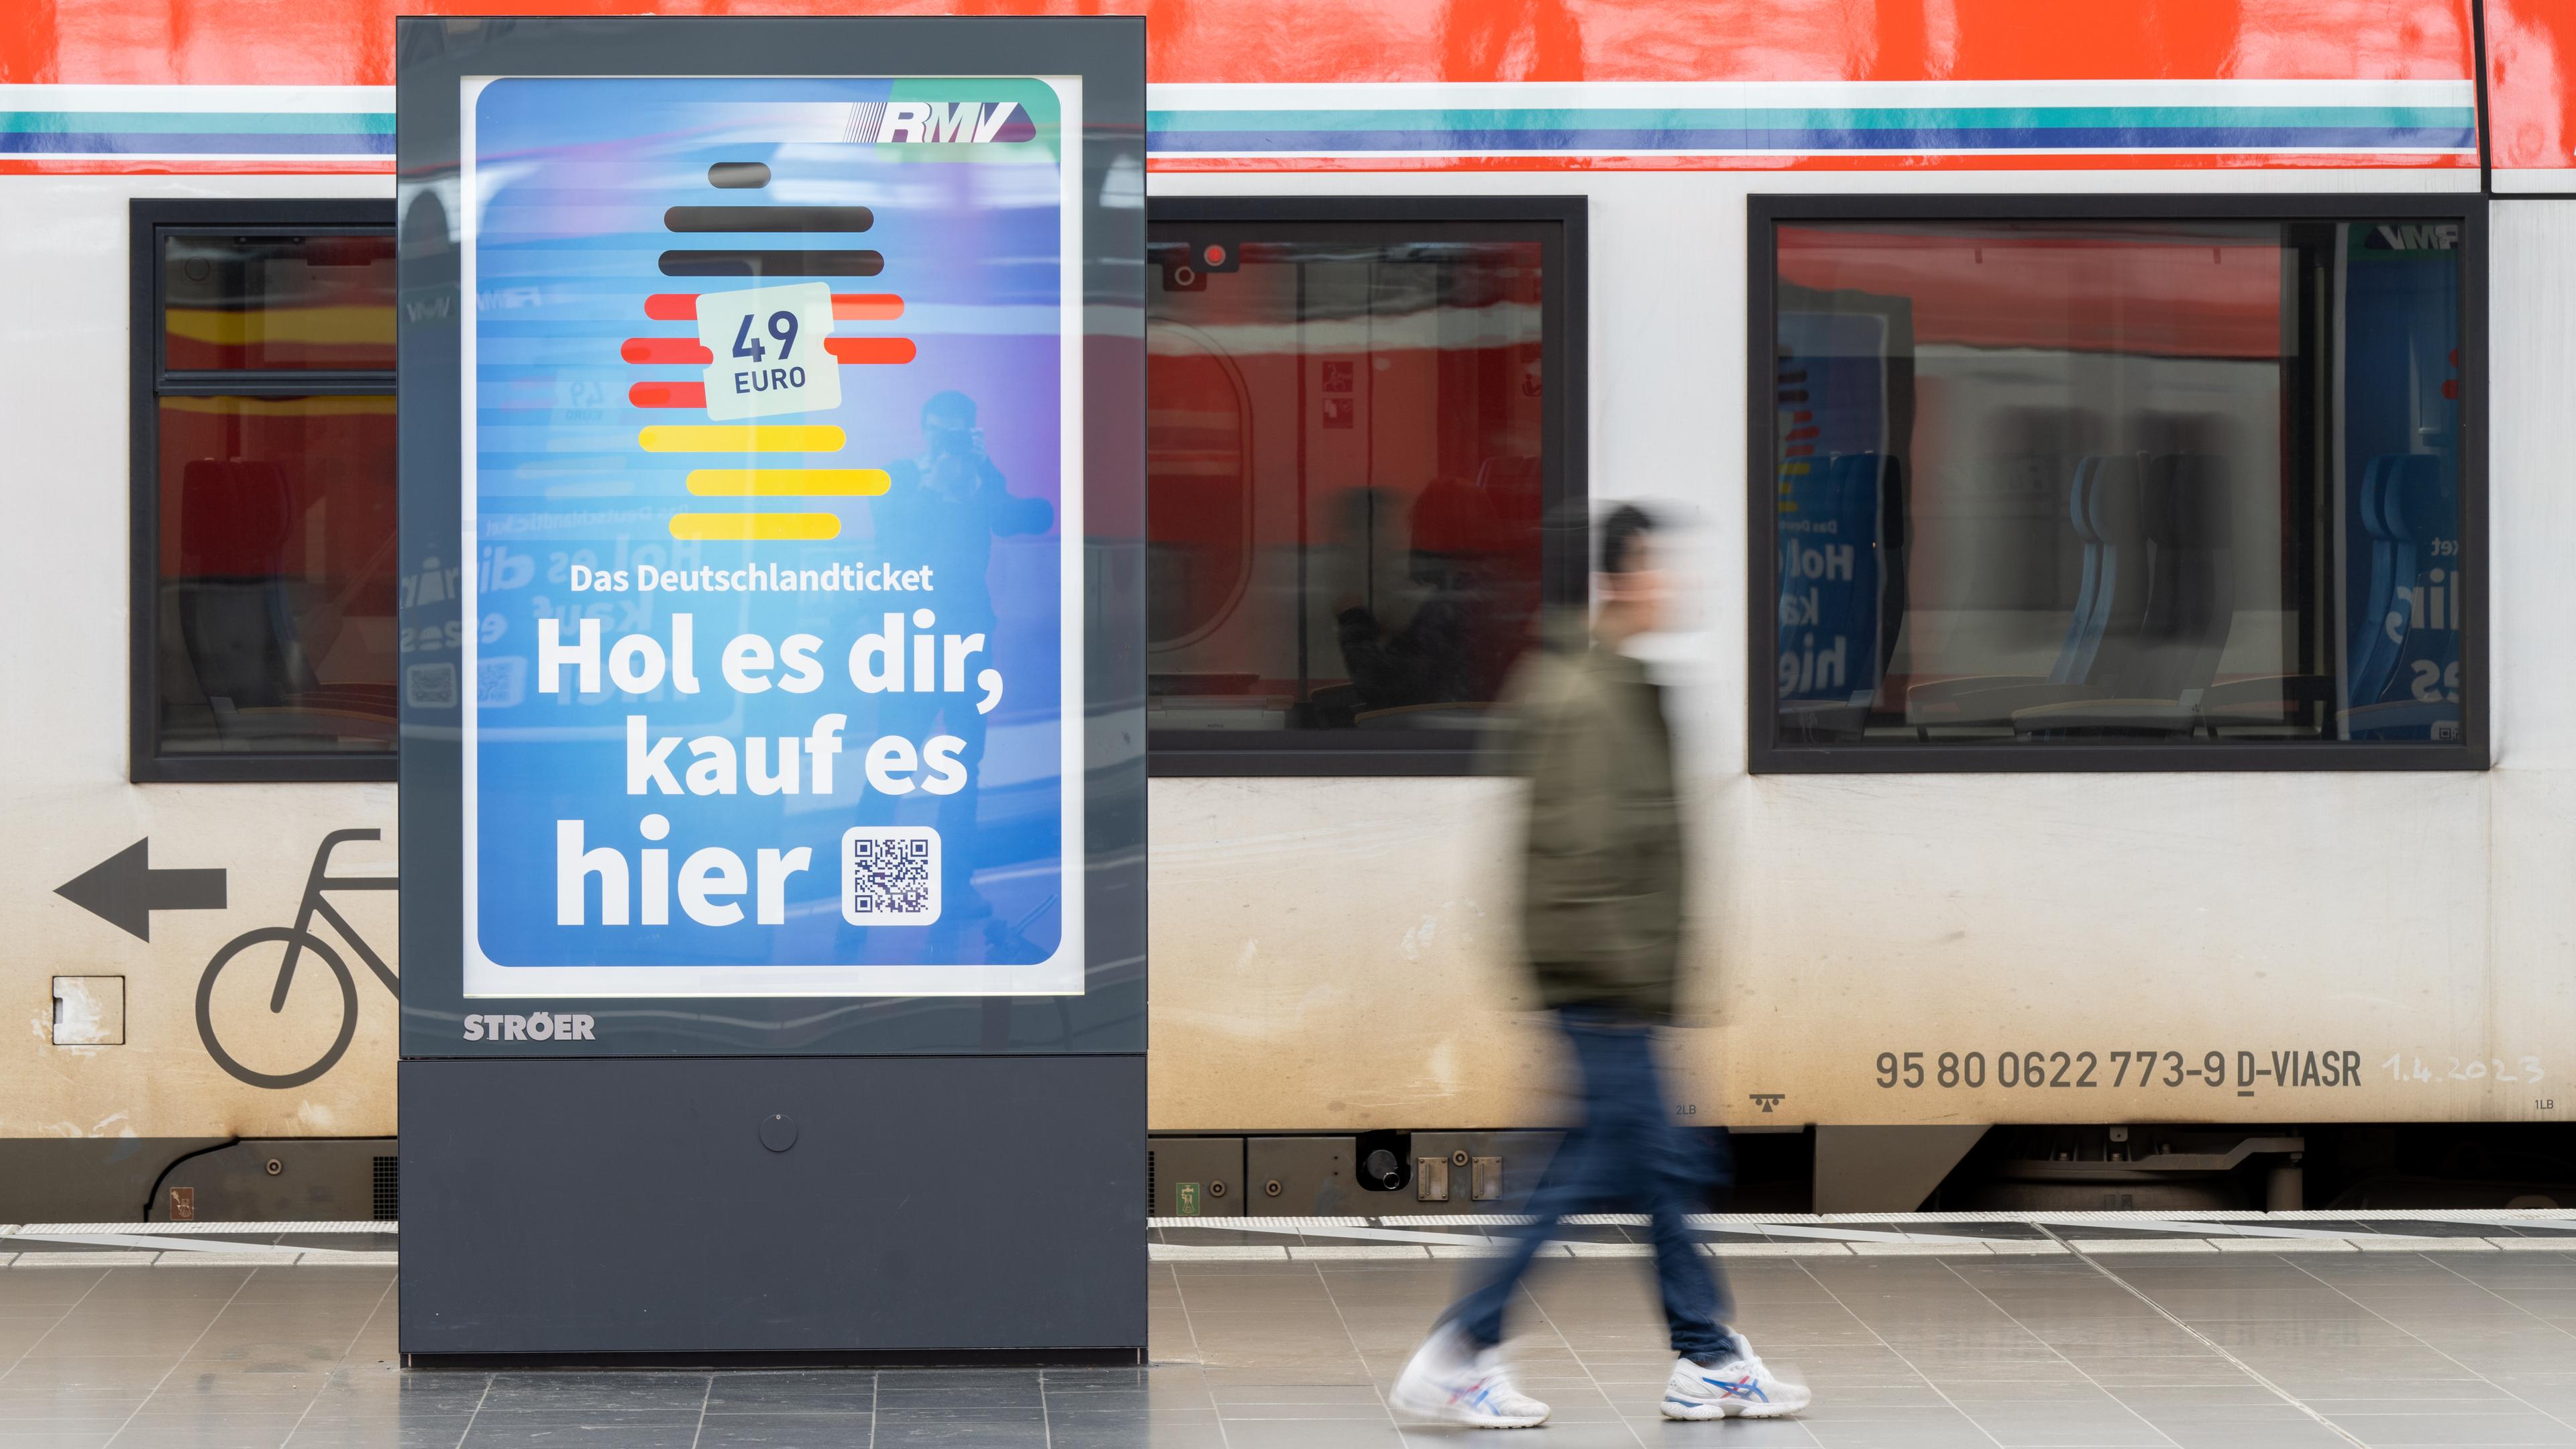 Zu sehen ist eine Werbung für das Deutschlandticket an einem deutschen Hauptbahnhof.